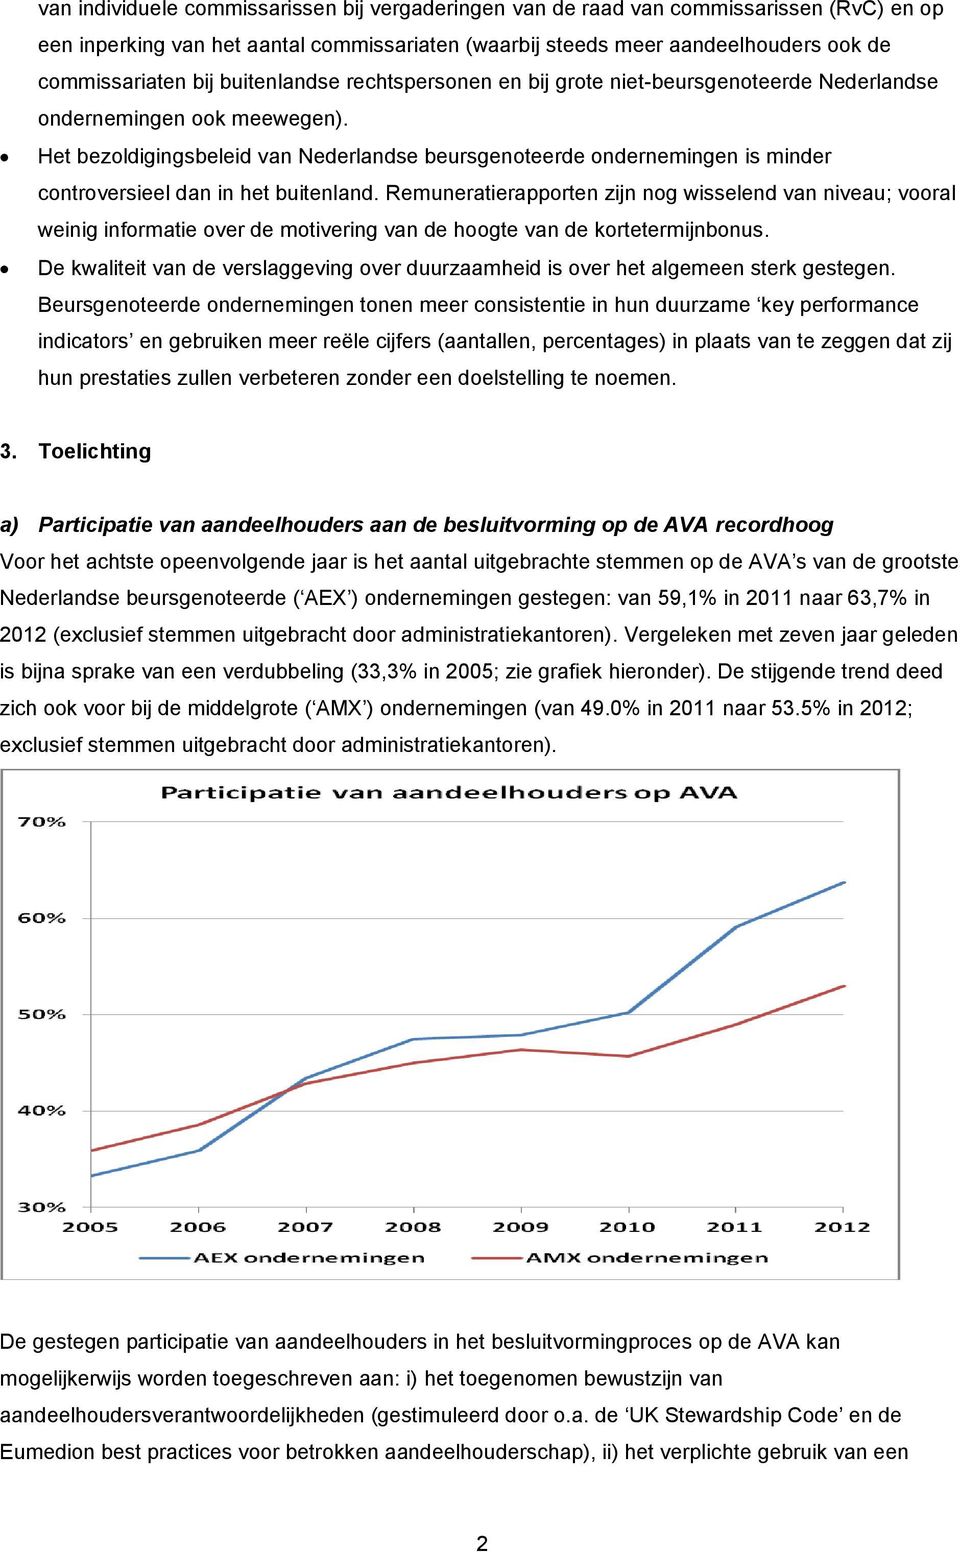 Het bezoldigingsbeleid van Nederlandse beursgenoteerde ondernemingen is minder controversieel dan in het buitenland.